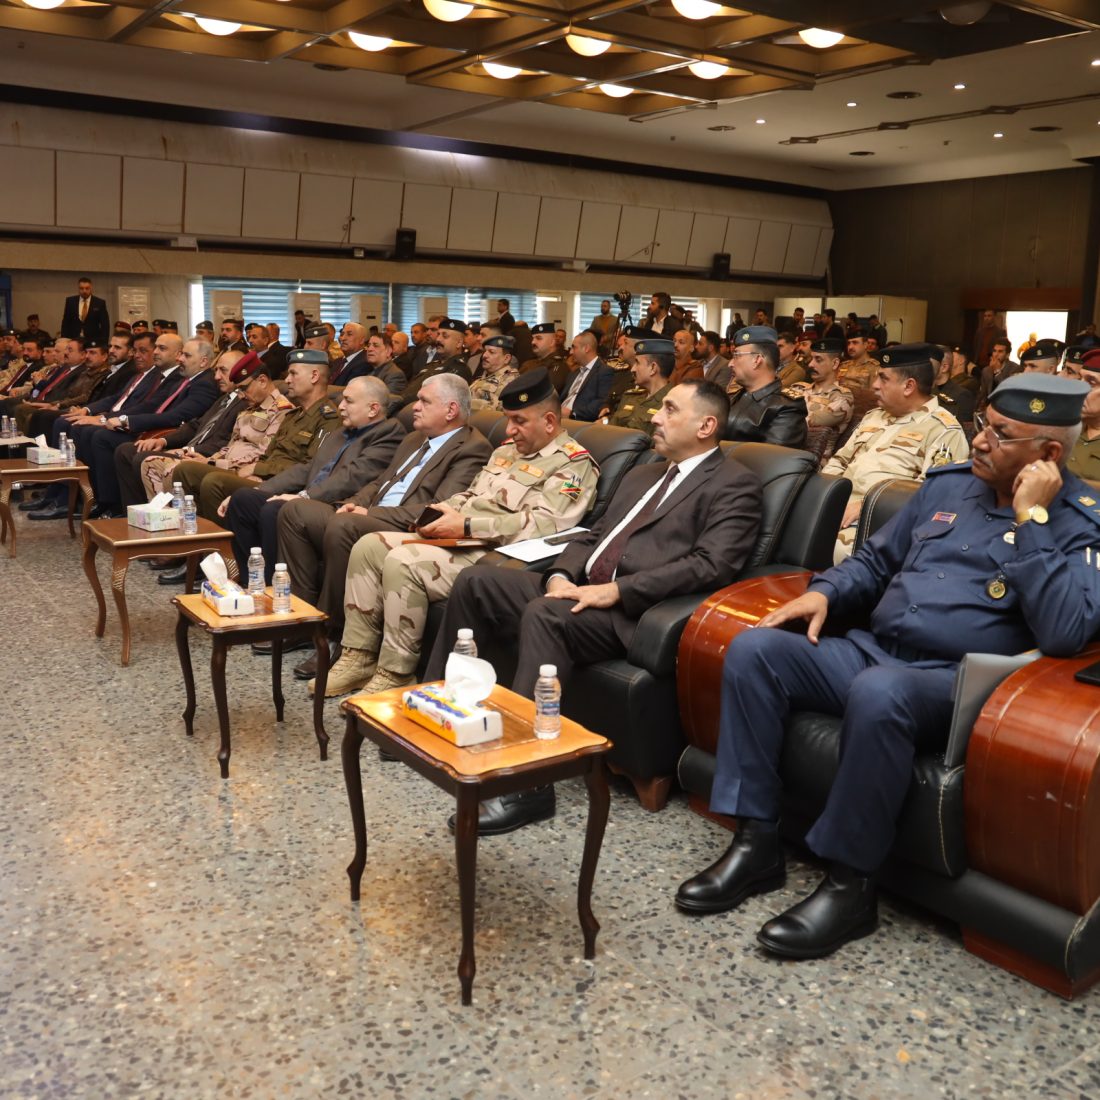 نقابة المهندسين العراقية تُنظم احتفالية مركزية لتكريم الزملاء المهندسين في وزارتي الداخلية والدفاع